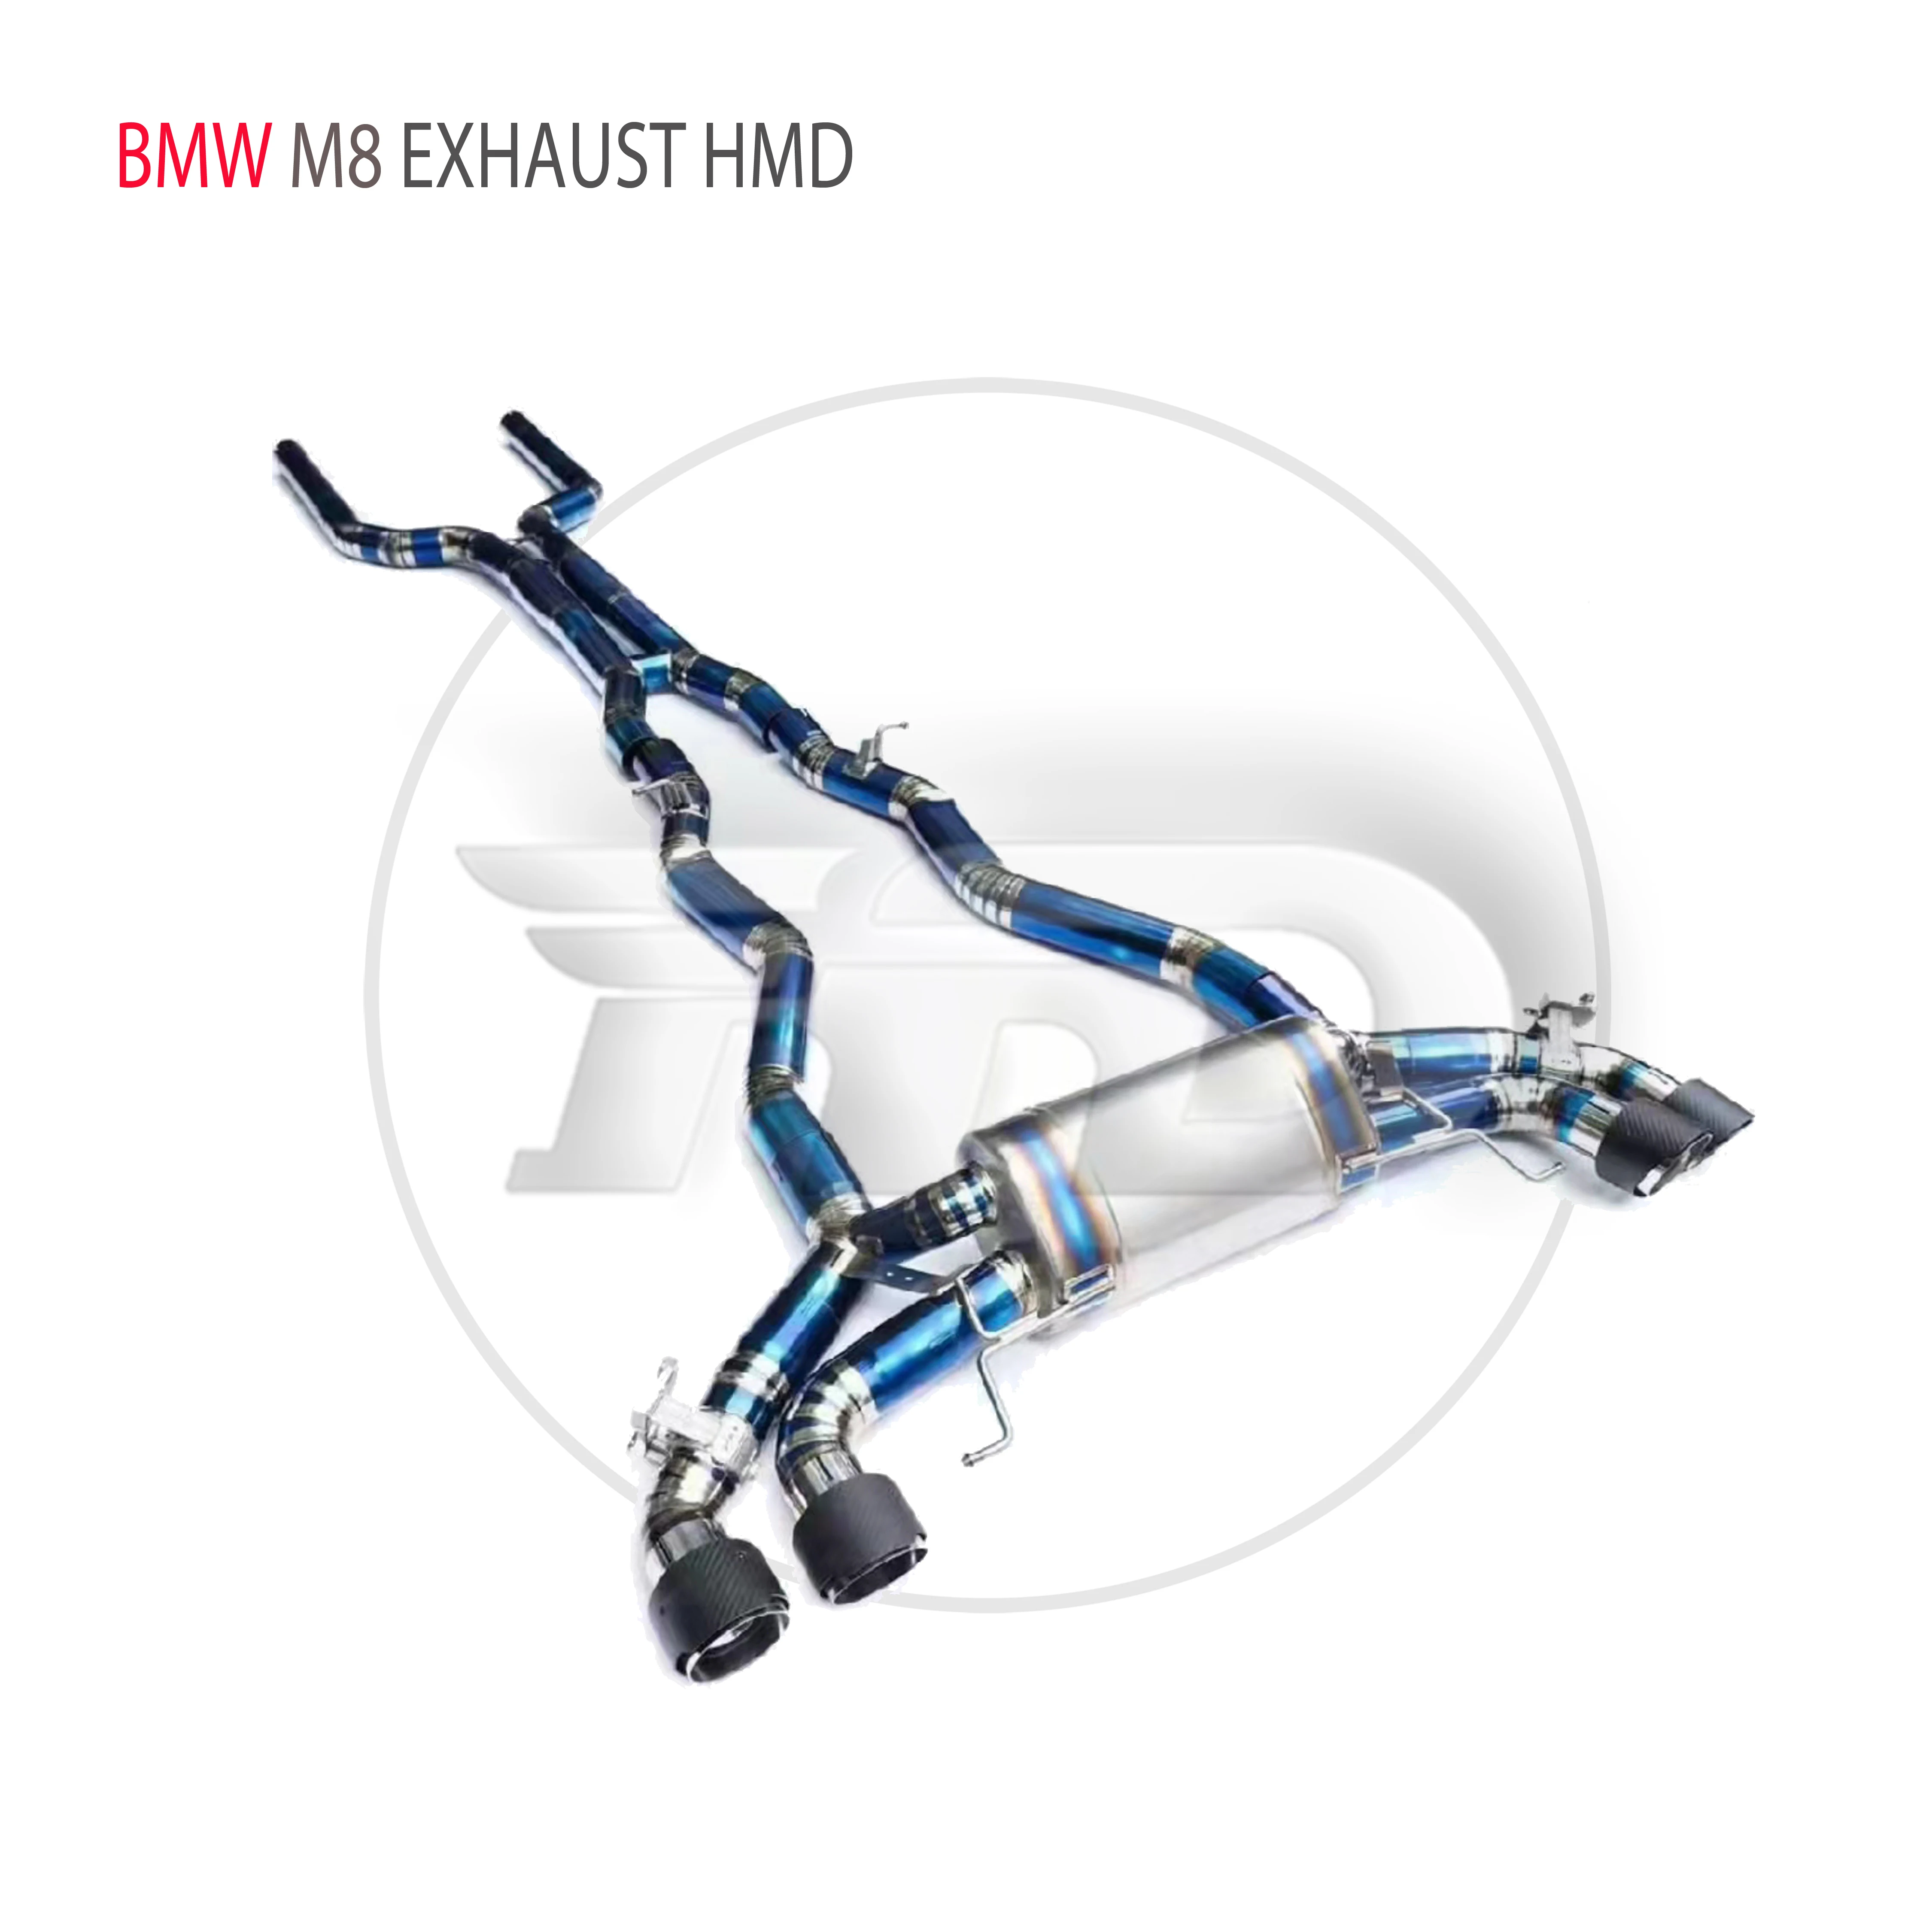 

HMD титановая выхлопная система Catback для BMW M8 глушитель для автомобилей модификация переменный клапан трубы